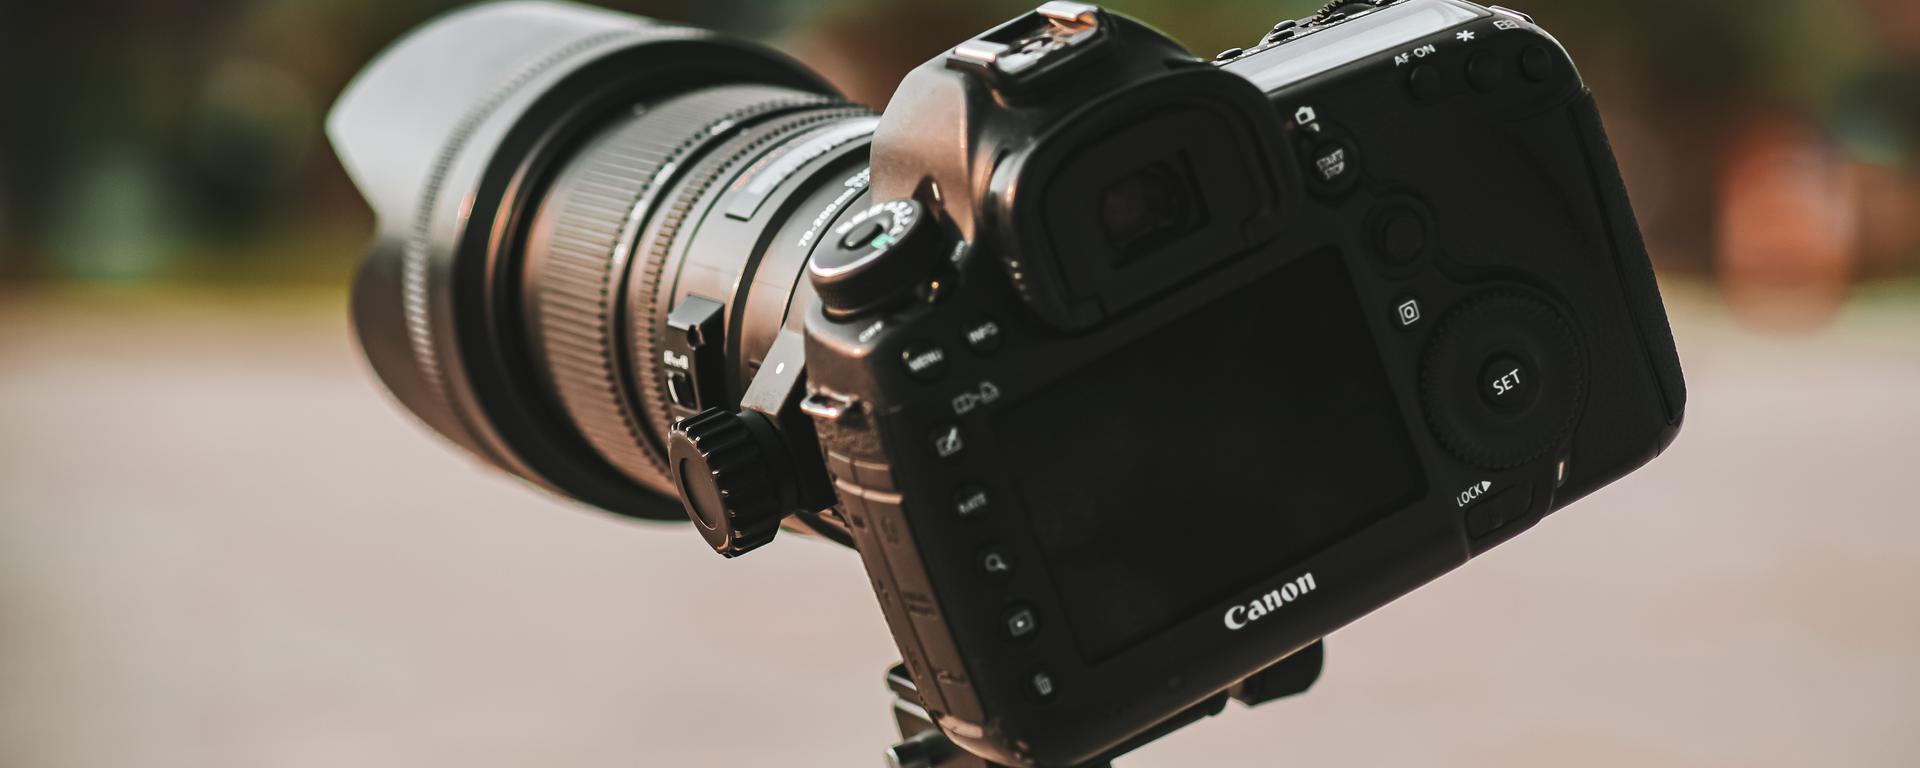 Cómo elegir tu primera cámara fotográfica? Aspectos para considerar antes  de comprar una, Cámaras digitales, Sony, Canon, Nikon, Pentax, Olympus, TECNOLOGIA